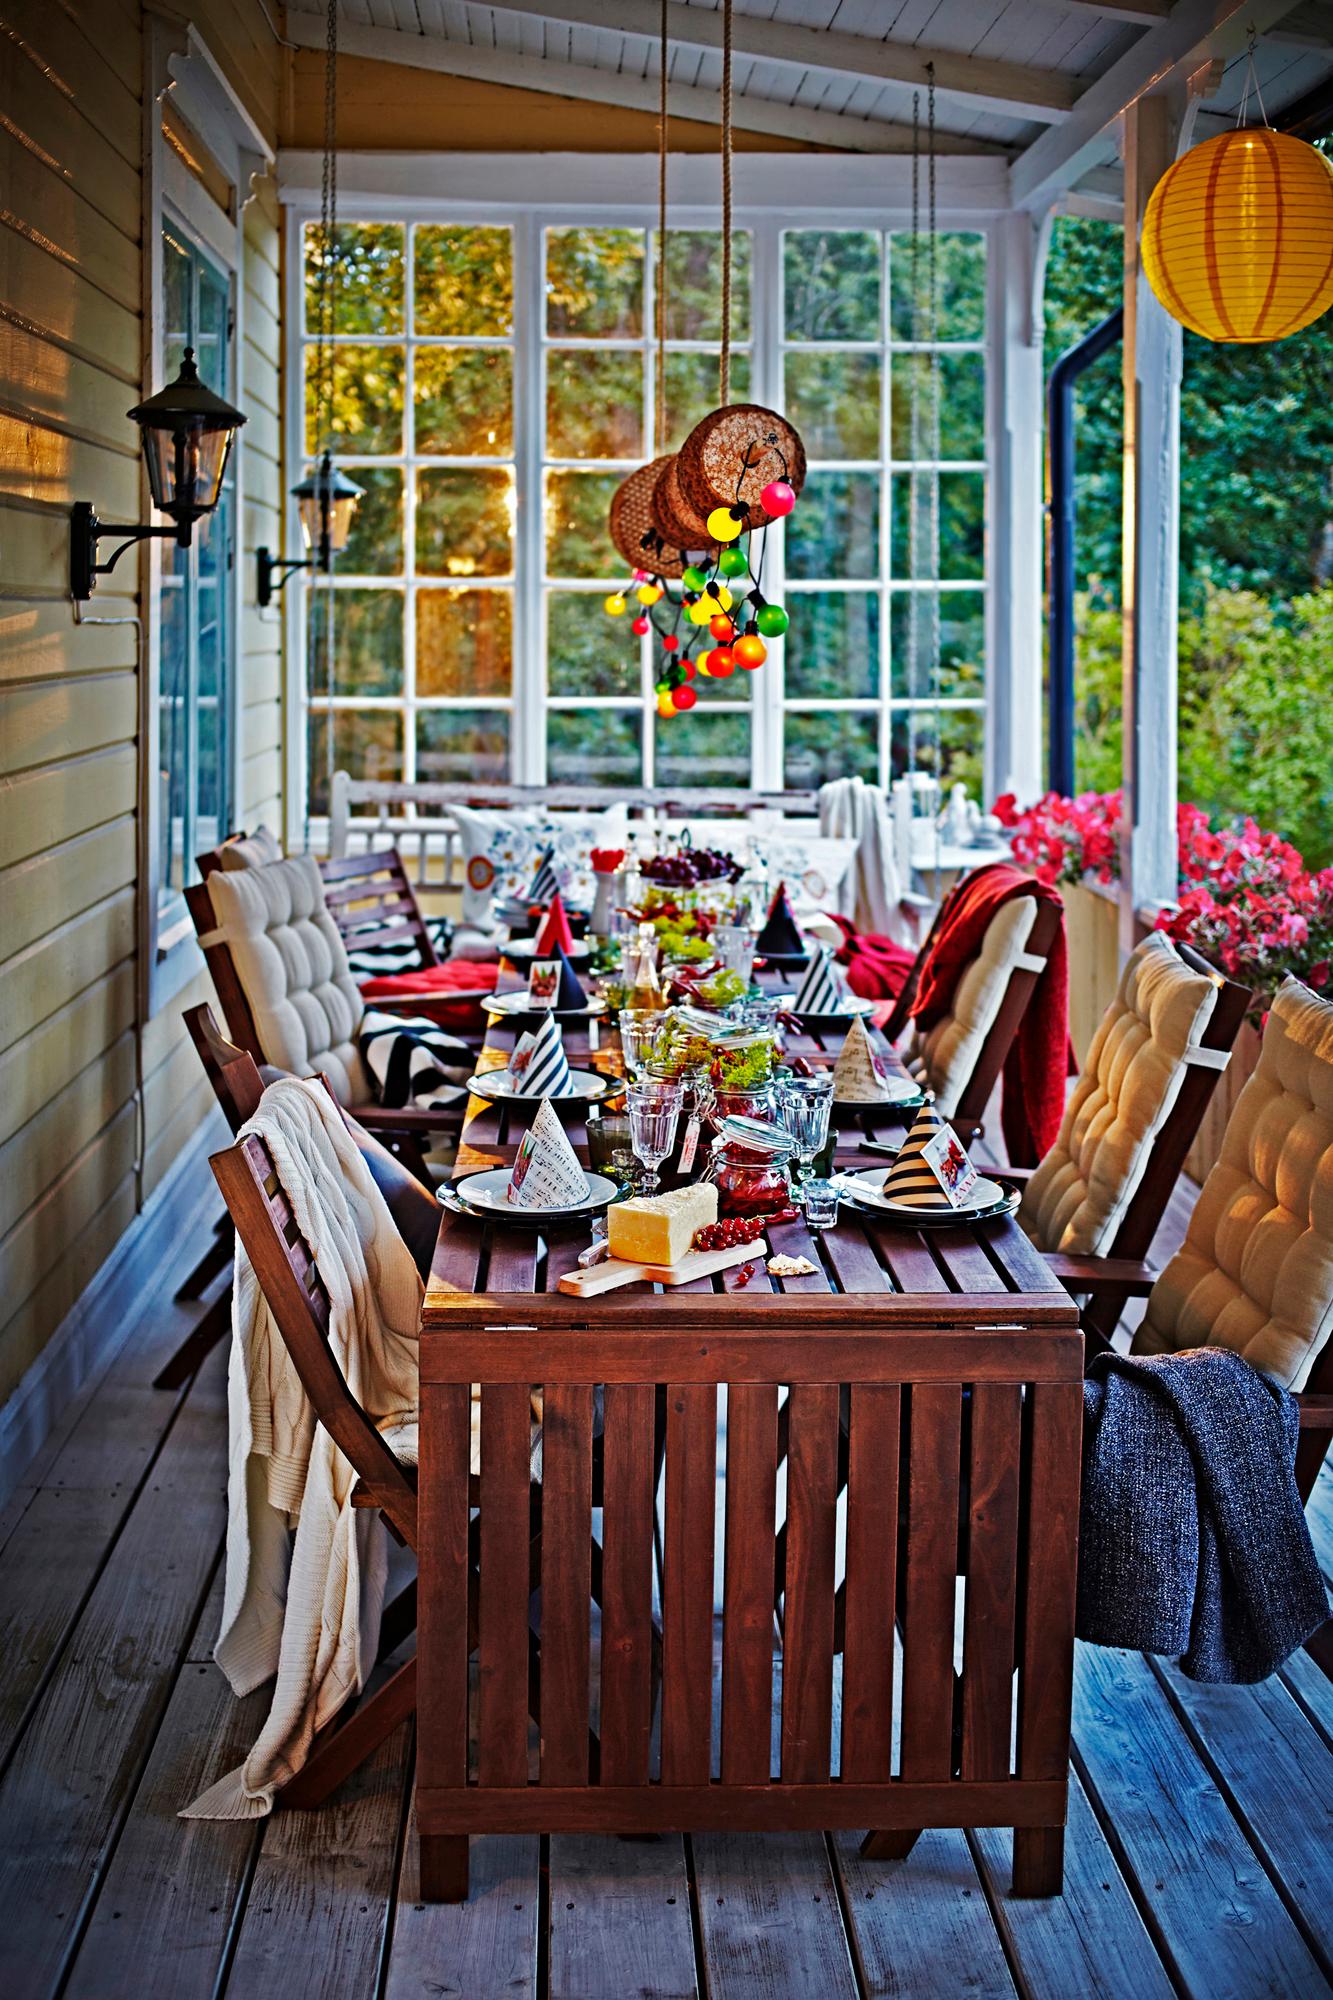 Bunte Partydeko auf der Veranda #terrasse #ikea #veranda #tischdeko #partydeko ©Inter IKEA Systems B.V.